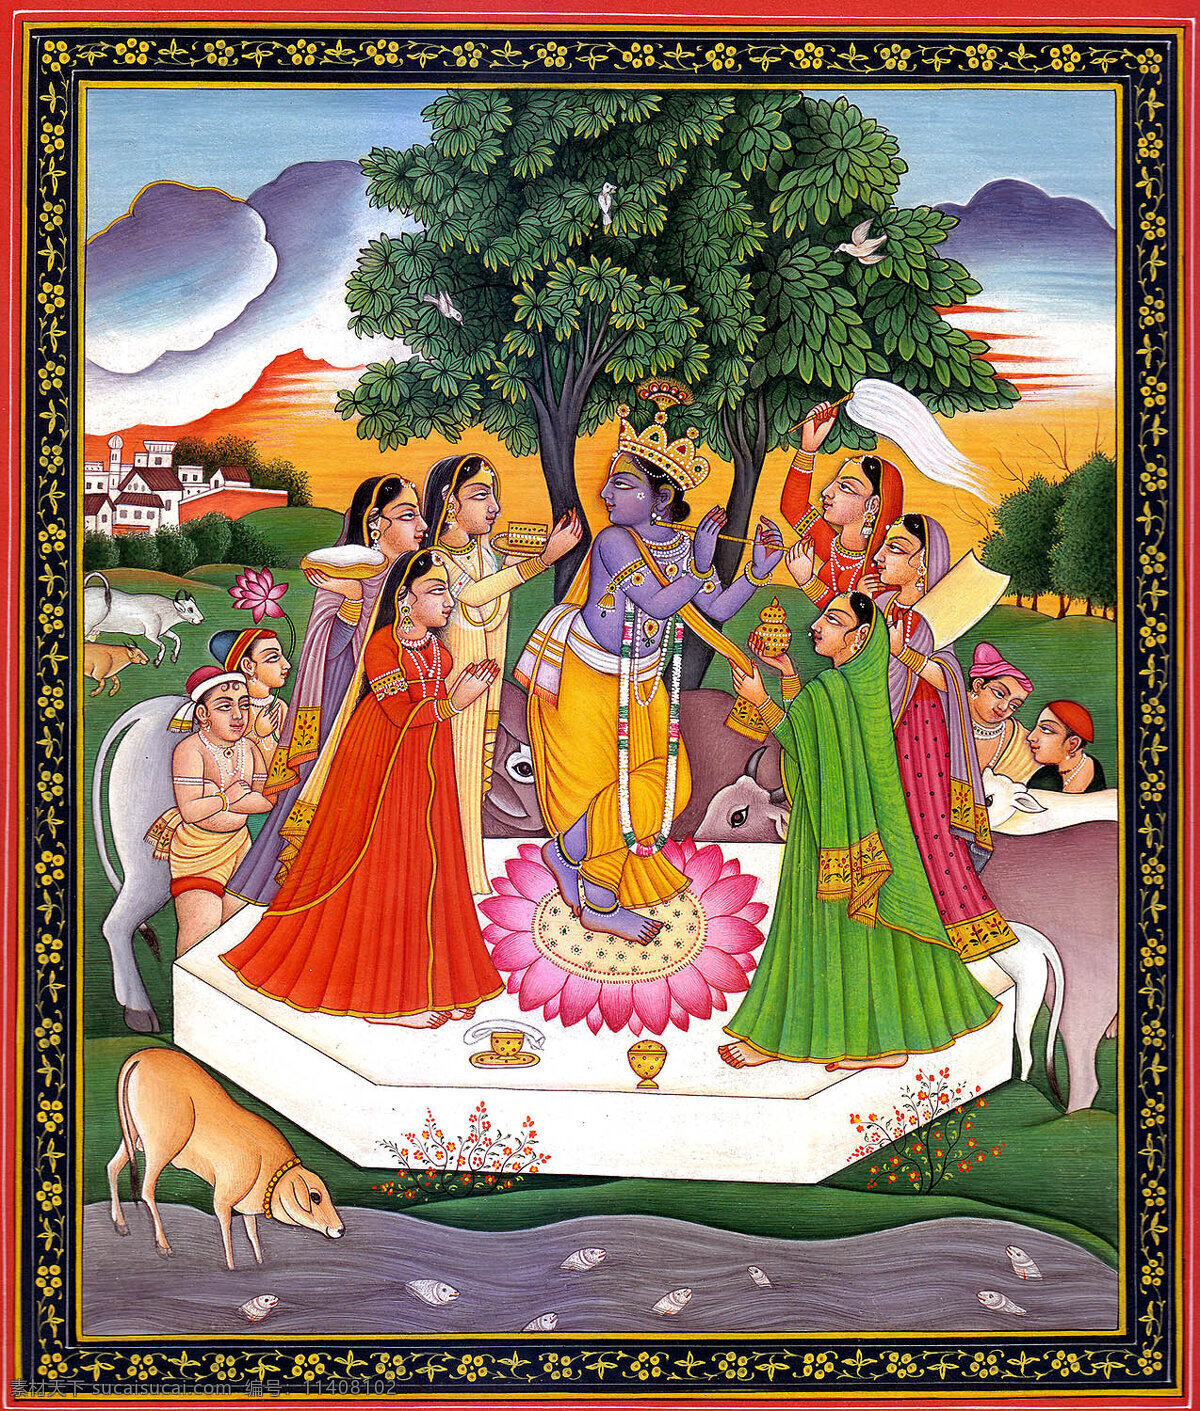 印度人物 人物 神像 宗教信仰 宗教艺术 文化艺术 传统文化